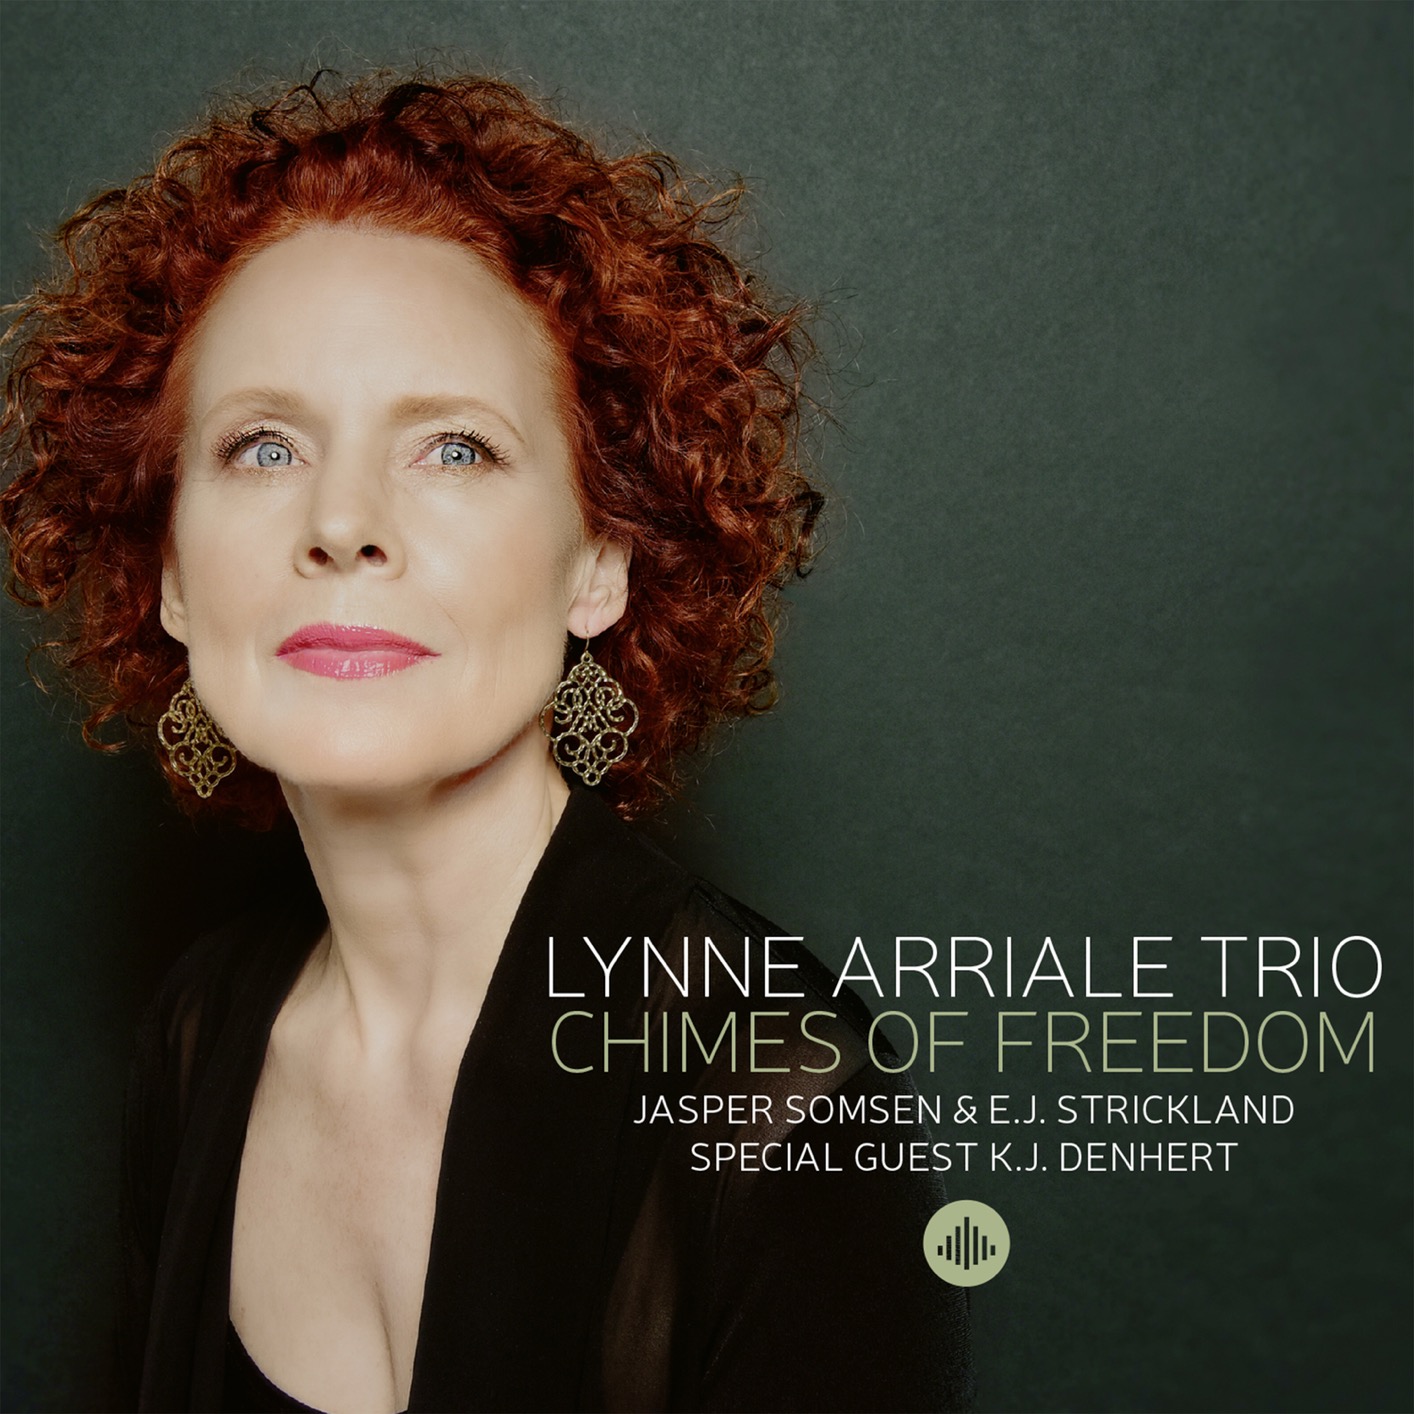 Lynne Arriale Trio - Chimes of Freedom (2020) [FLAC 24bit/96kHz]